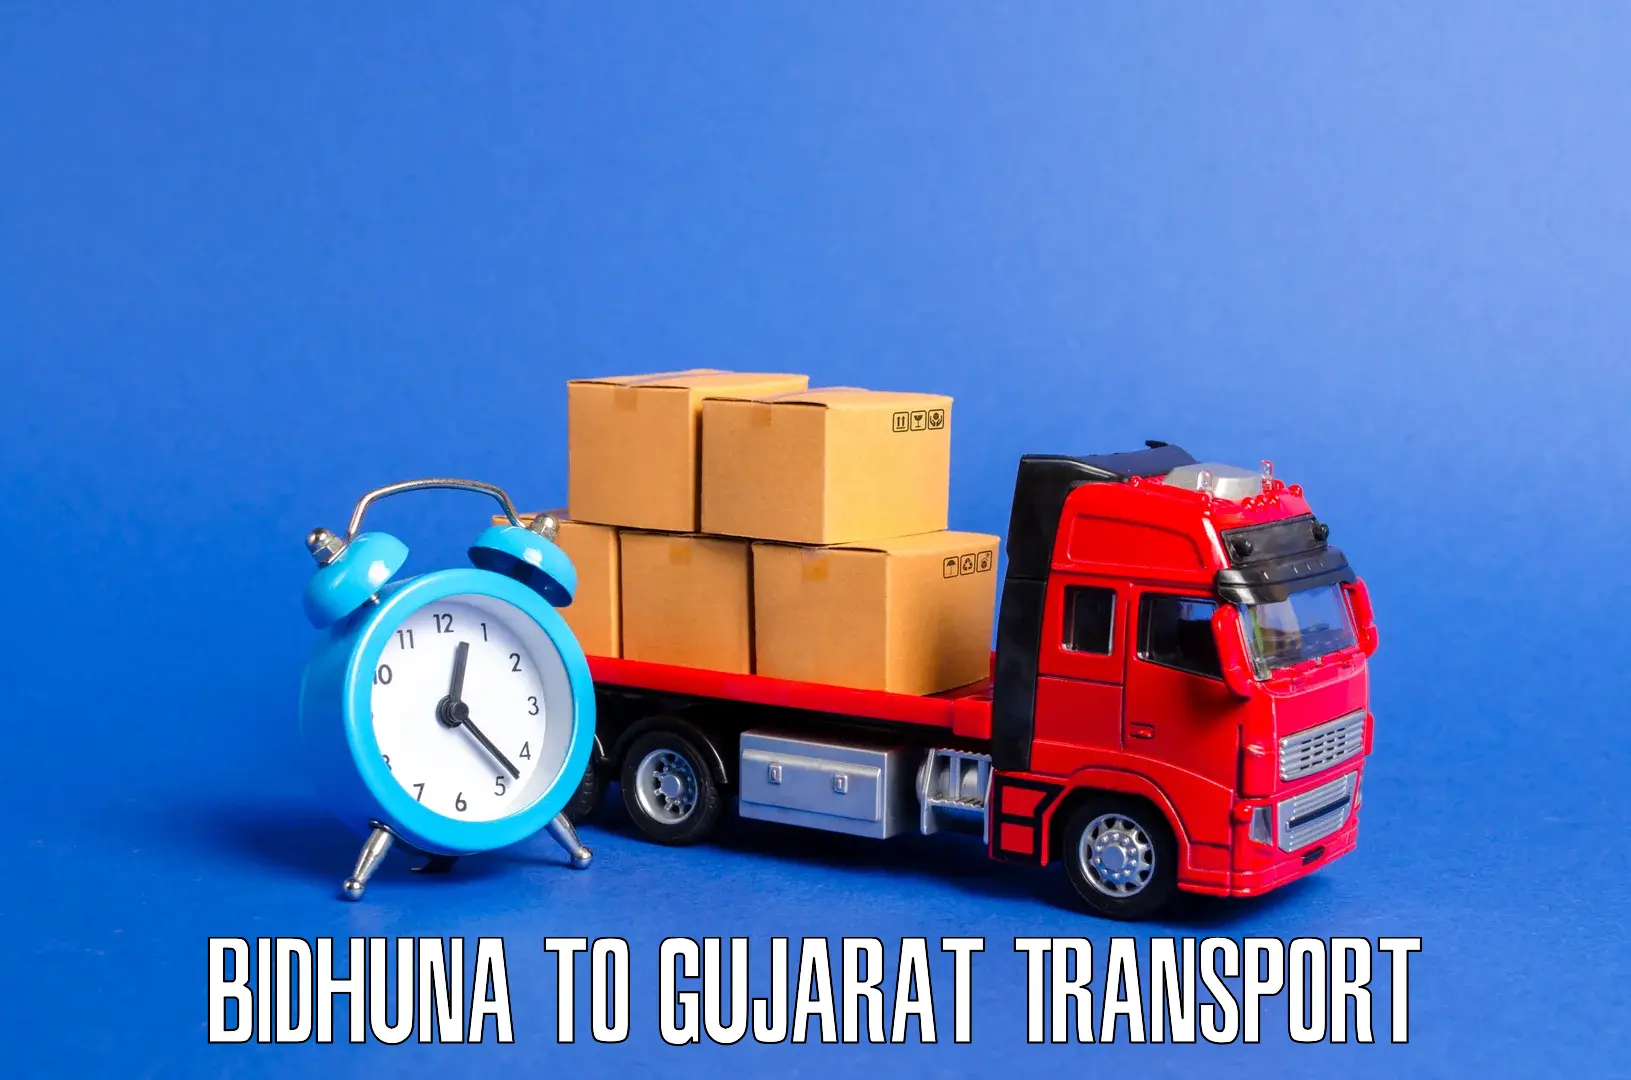 Vehicle transport services Bidhuna to Dhandhuka